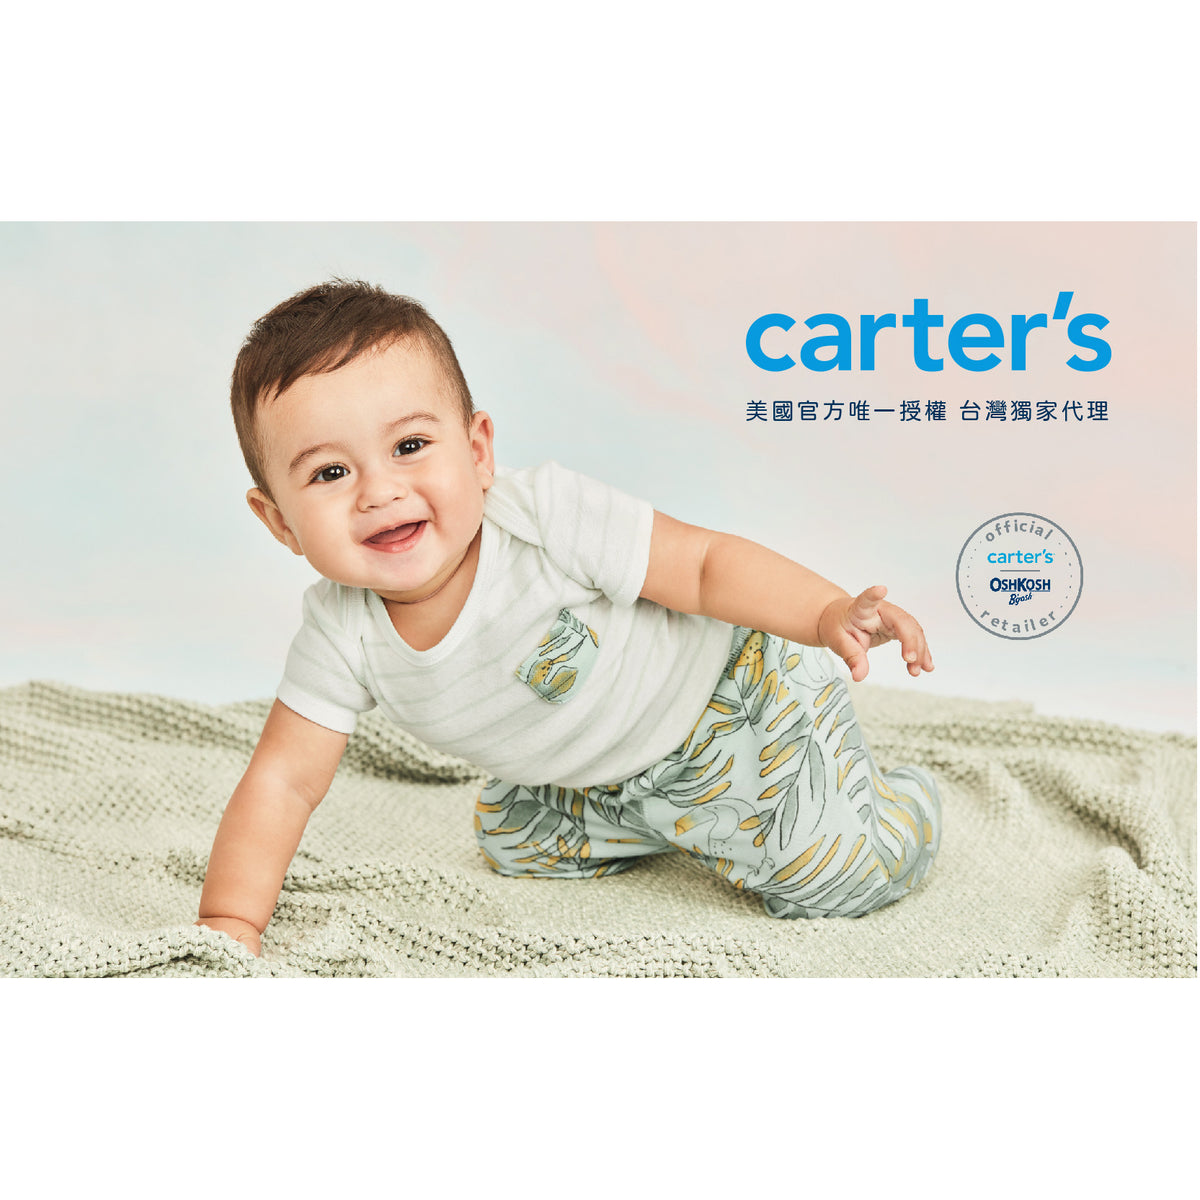 Carter's 悠遊太空趣連身褲(12M-18M)